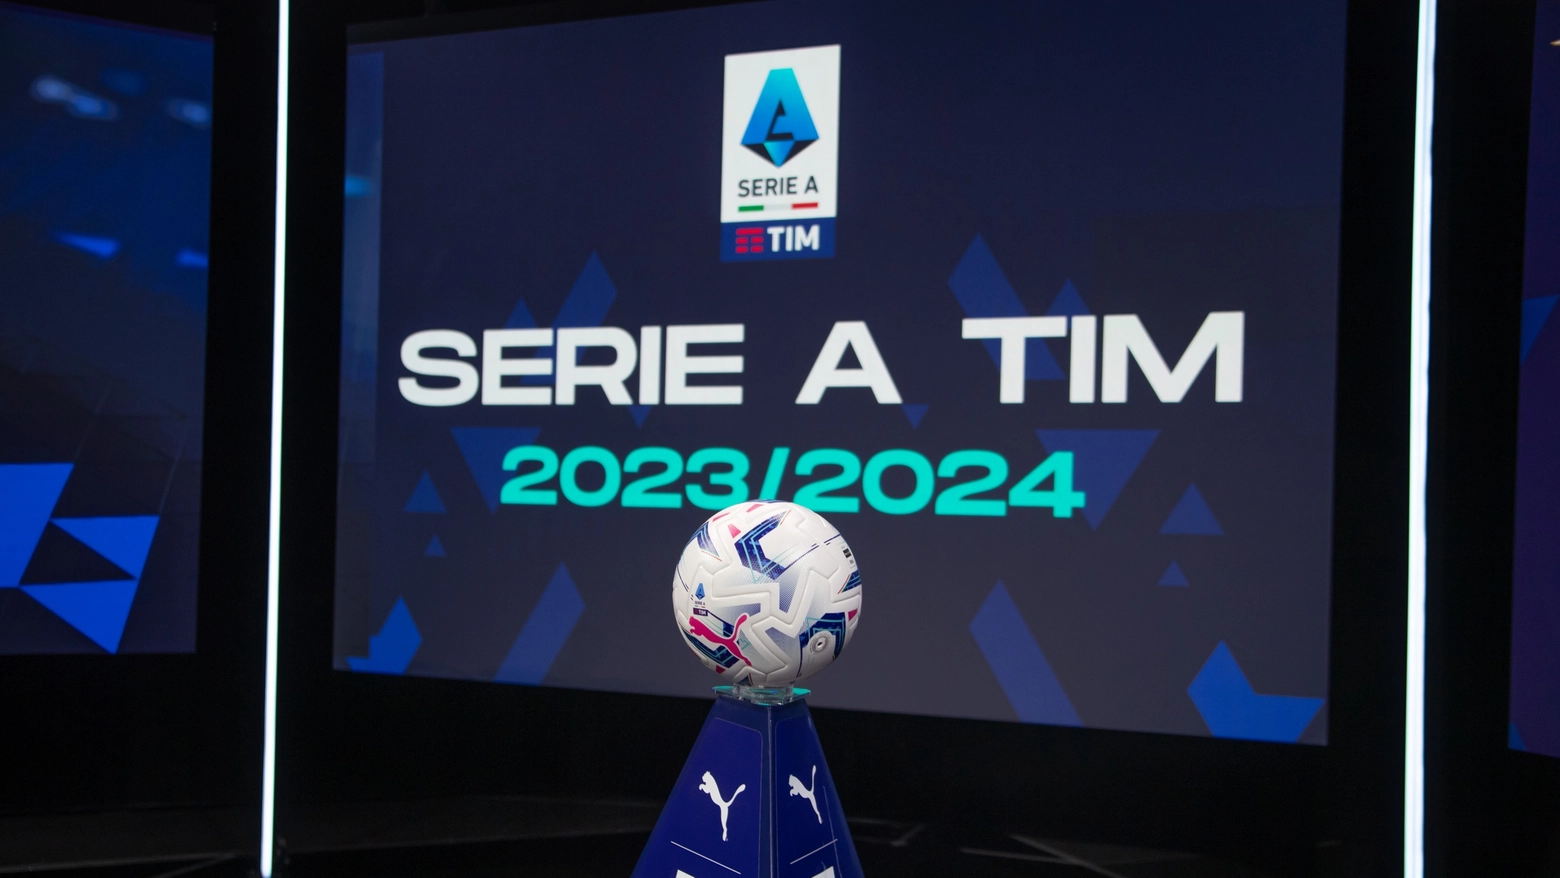 Ufficializzate le date della Serie A 2023-2024. Tutti gli orari delle partite fino al termine del girone d'andata e la programmazione televisiva